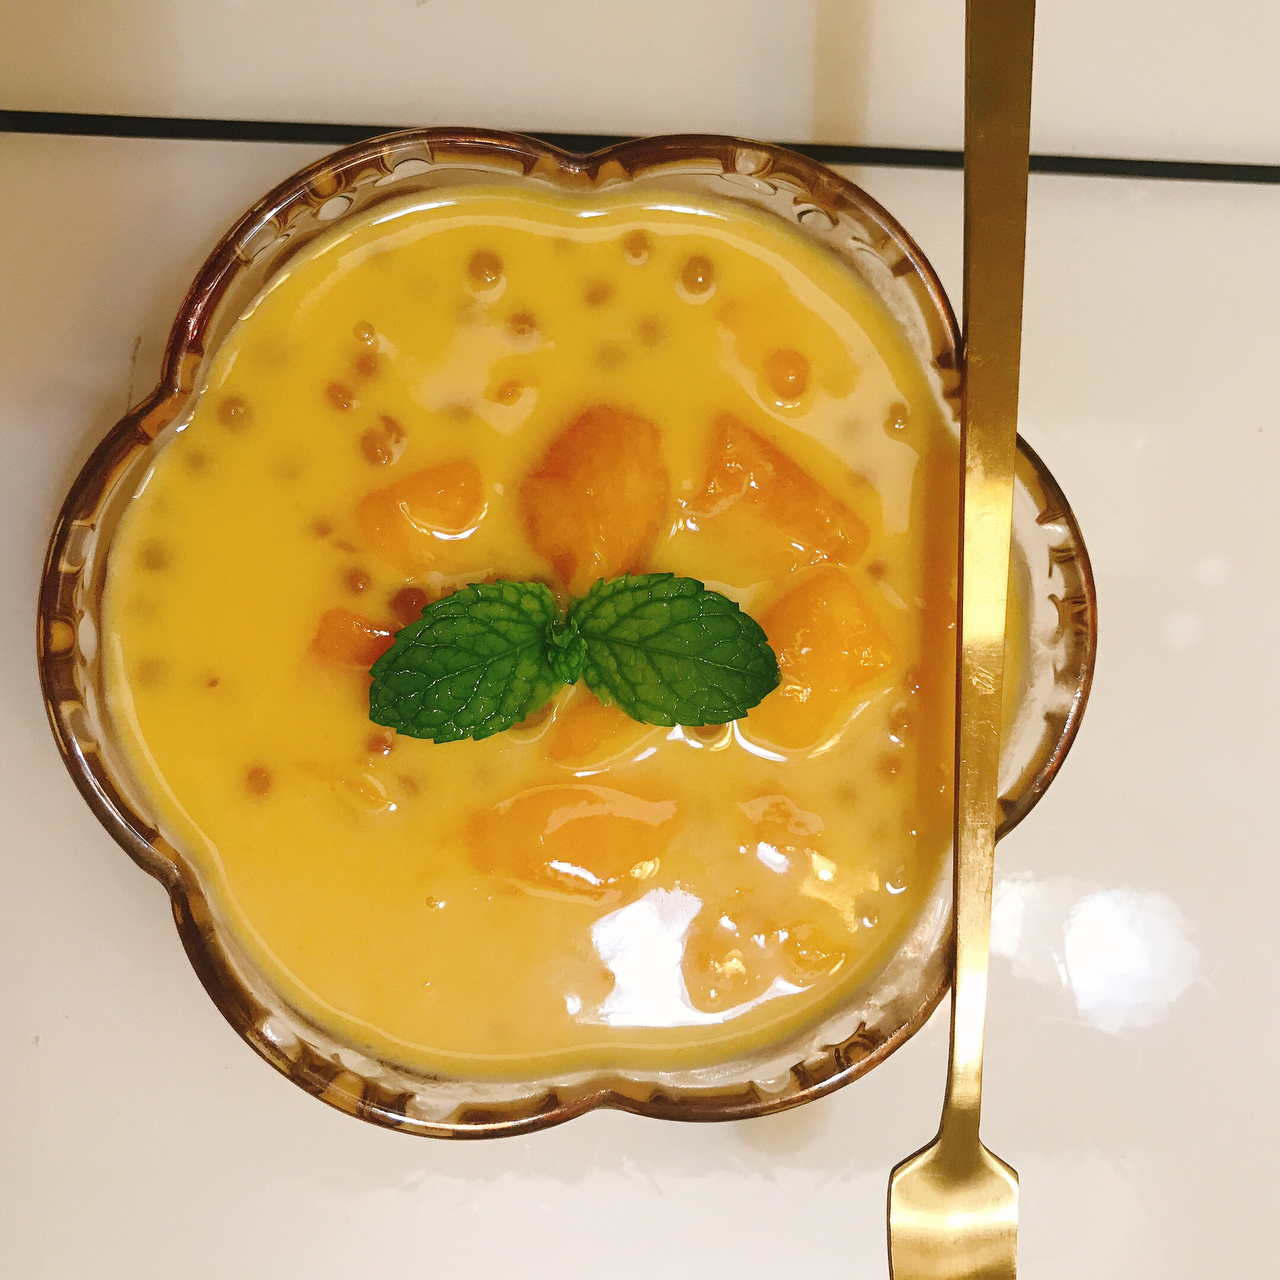 港式甜品——杨枝甘露(芒果西米露)附芒果花切法